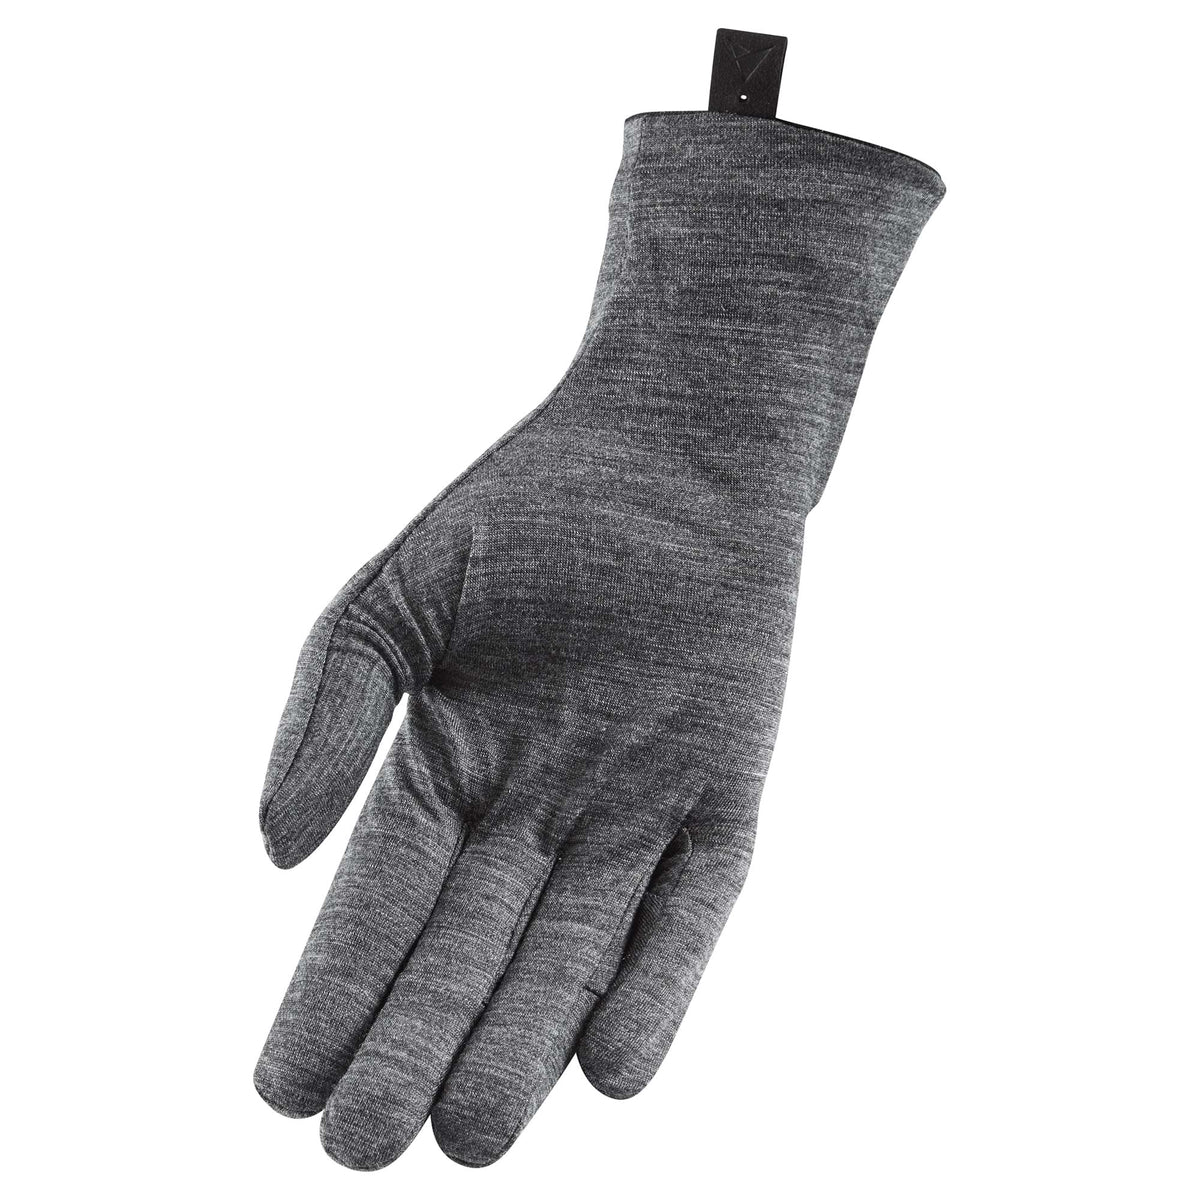 Altura Merino Liner Gloves